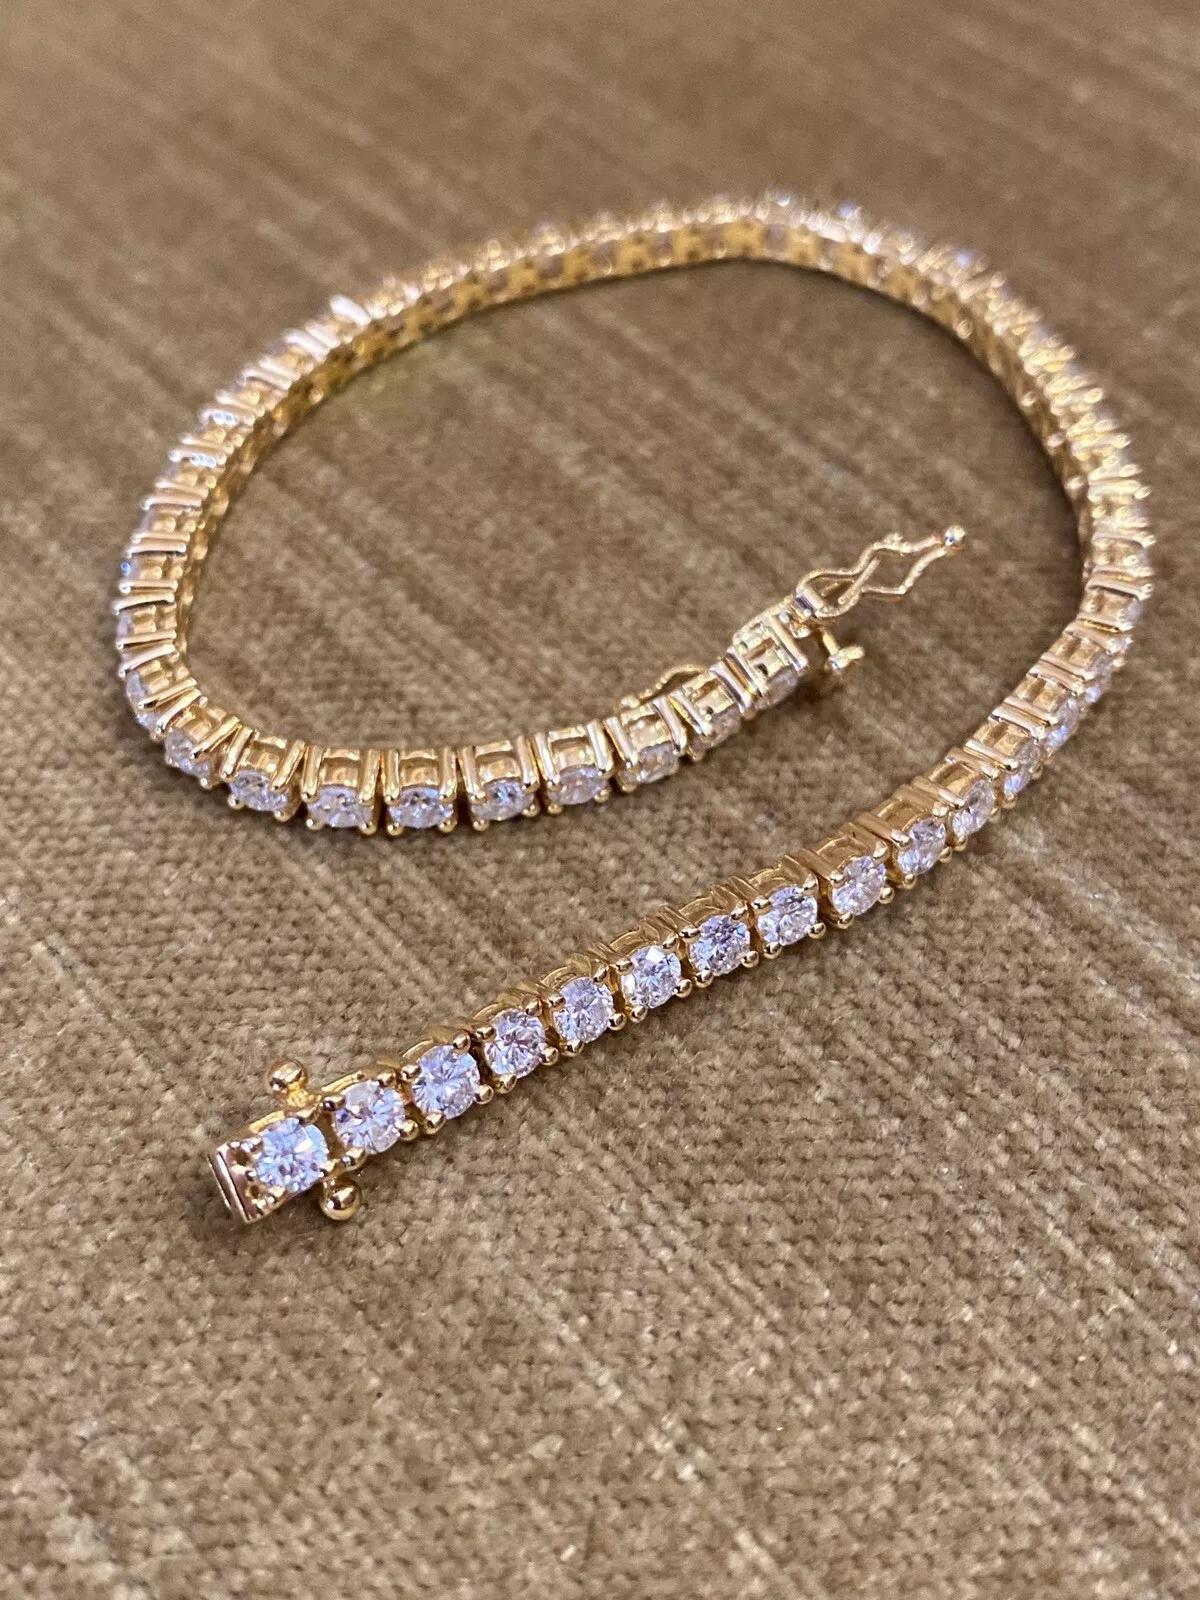 Bracelet de tennis en diamants ronds d'un poids total de 4,40 carats en or jaune 18k

Le bracelet de tennis en diamant comporte 51 diamants ronds et brillants sertis dans de l'or jaune 18k.

Le poids total des diamants est de 4,40 carats.
Le